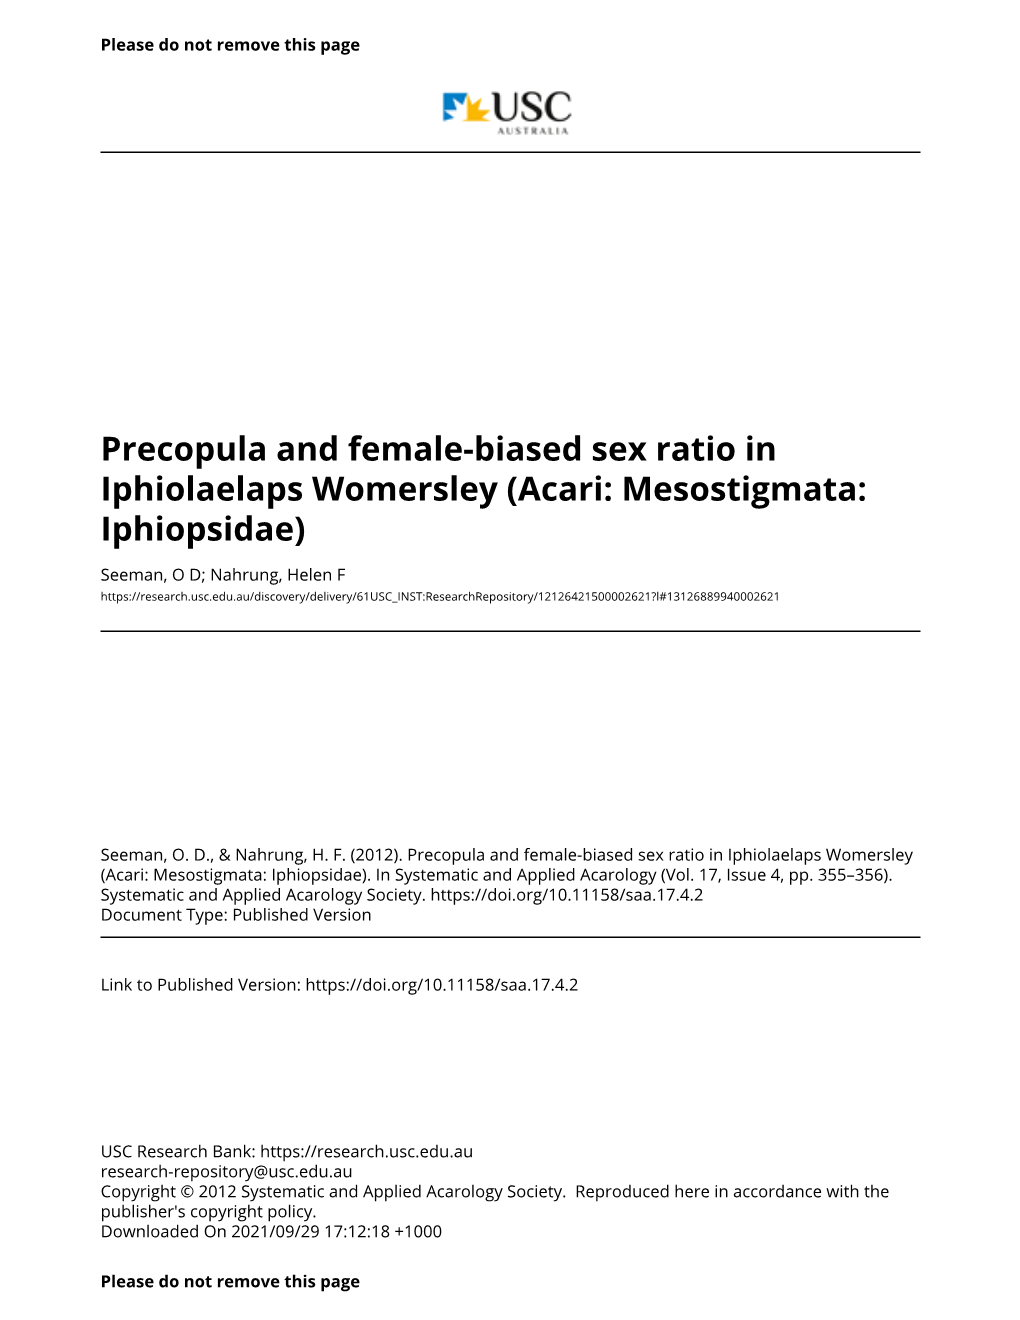 Precopula and Female-Biased Sex Ratio in Iphiolaelaps Womersley (Acari: Mesostigmata: Iphiopsidae)